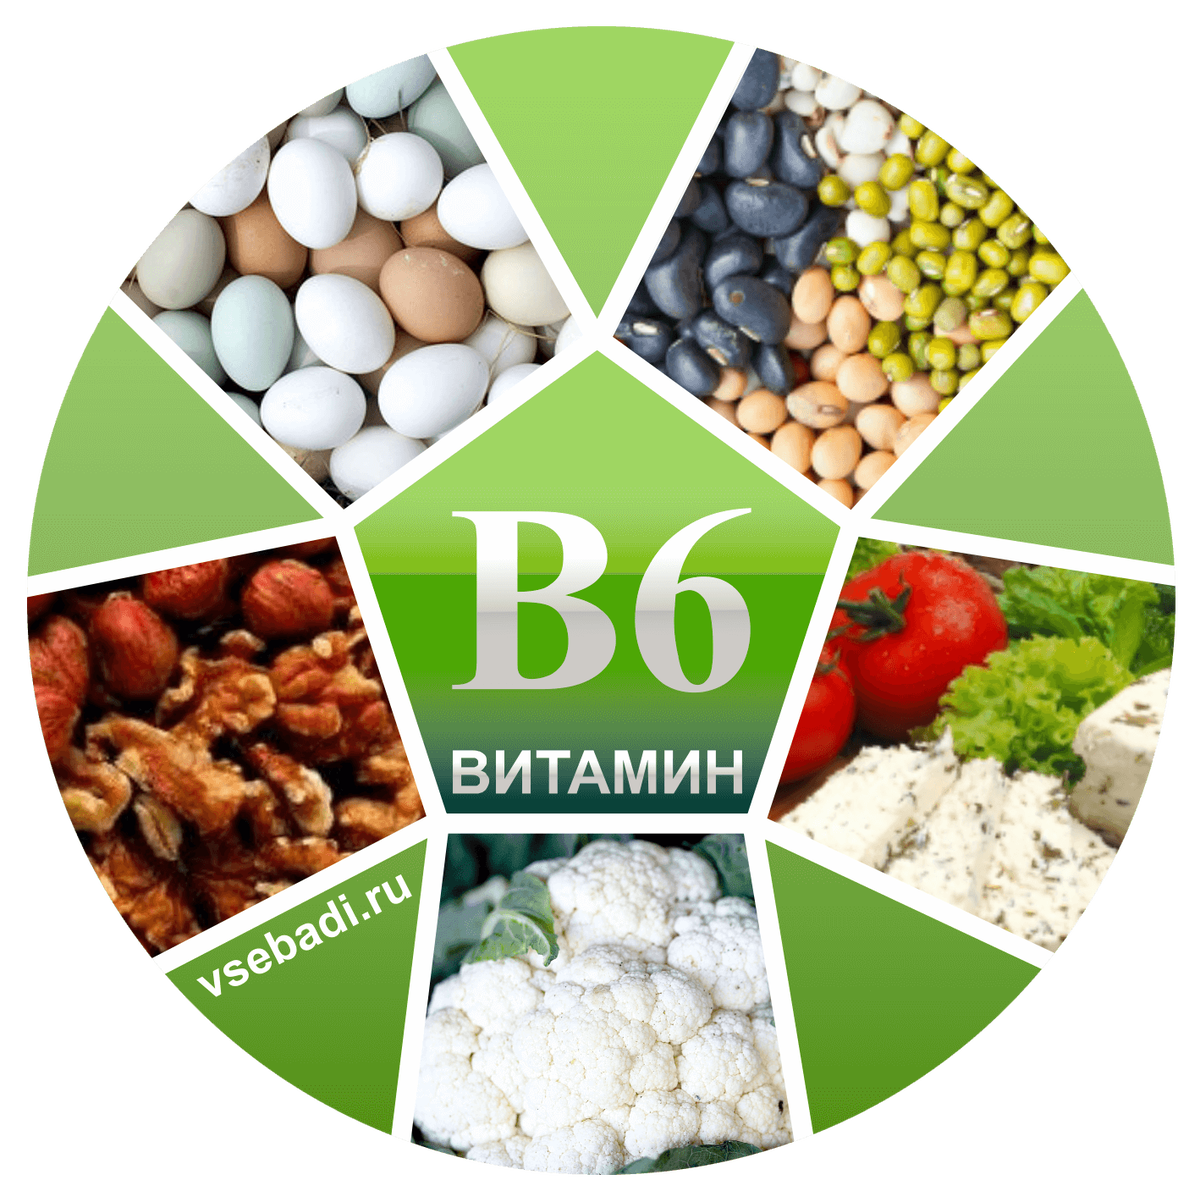 Витамин б6 можно пить. Витамин b6 название витамина. Витамины группы б6. Витамин b6 пиридоксин. Витамин b6 источники витамина.